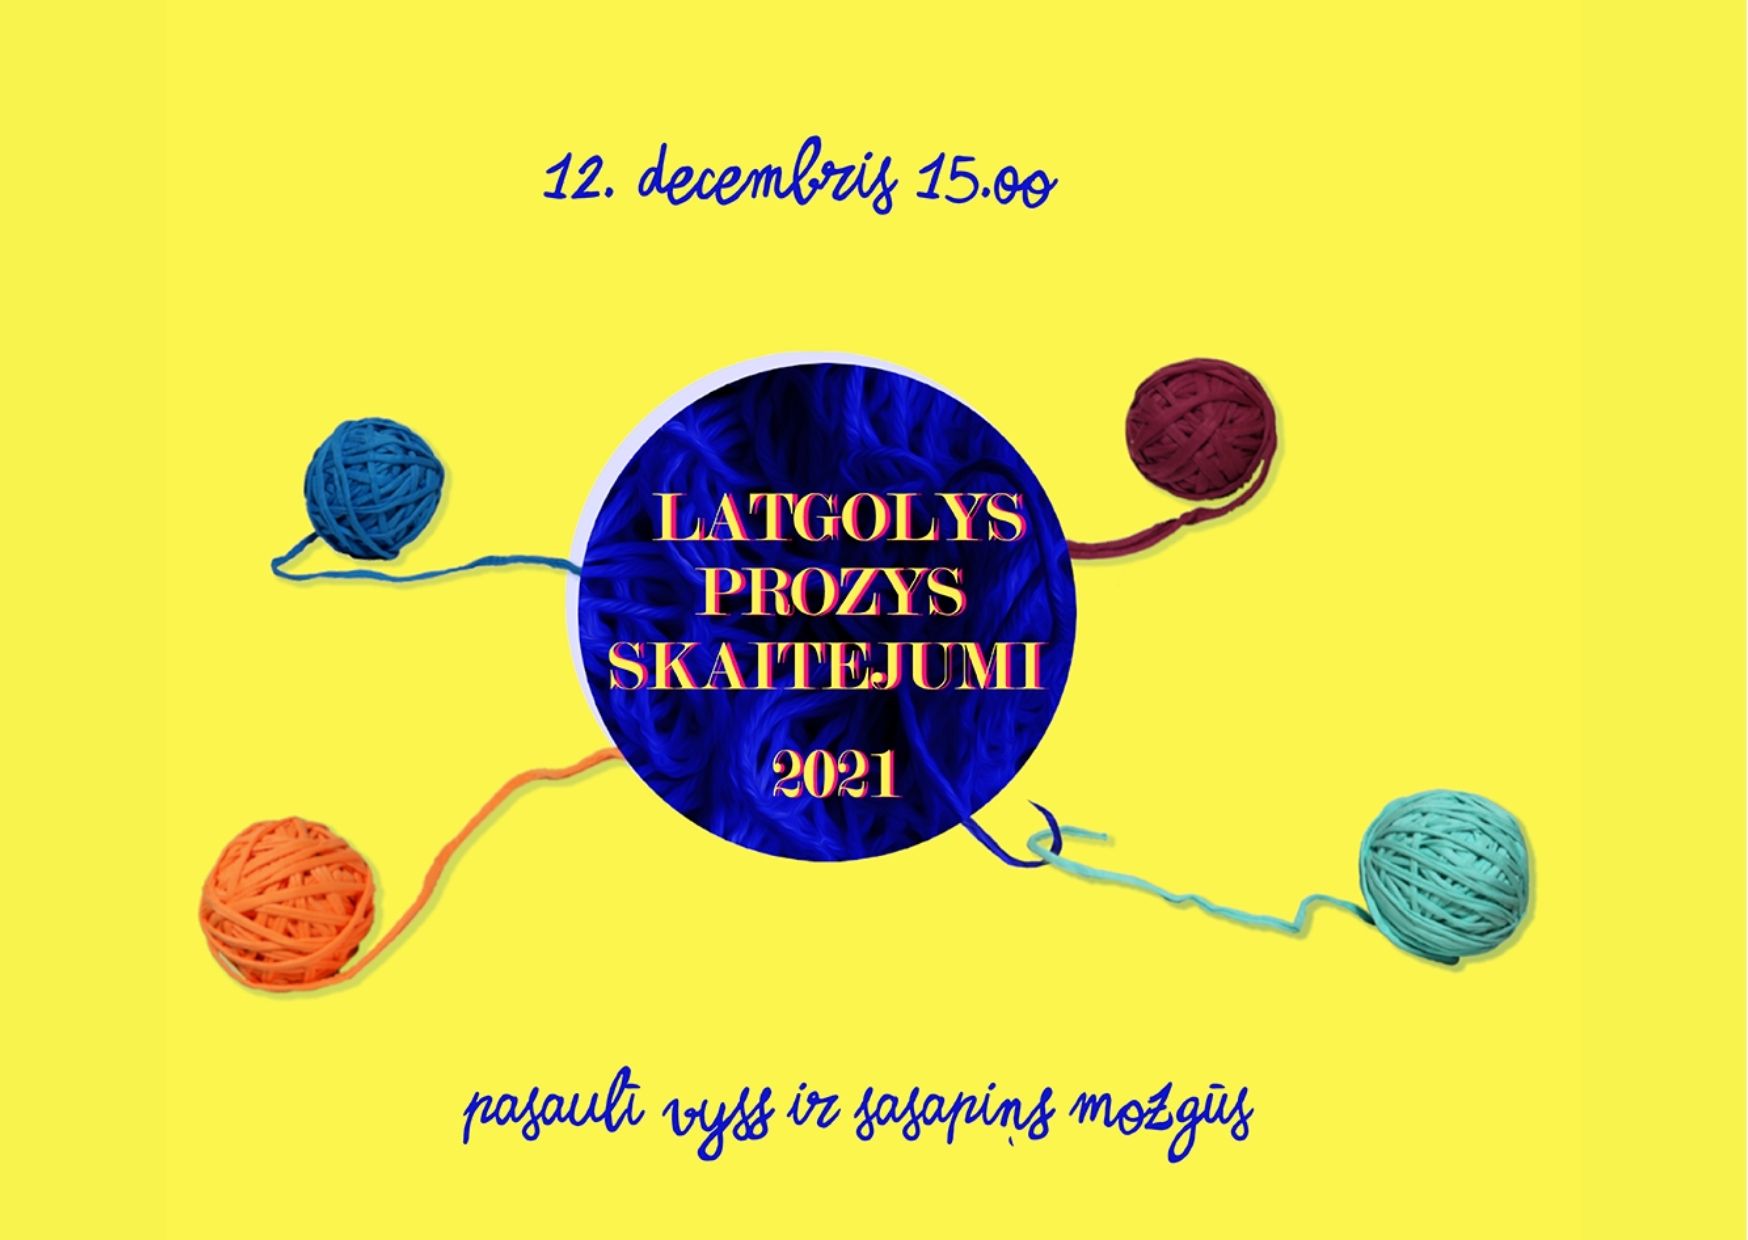 Tīšraidē byus nūsaverams konkursa “Latgolys prozys skaitejumi 2021” nūslāgums